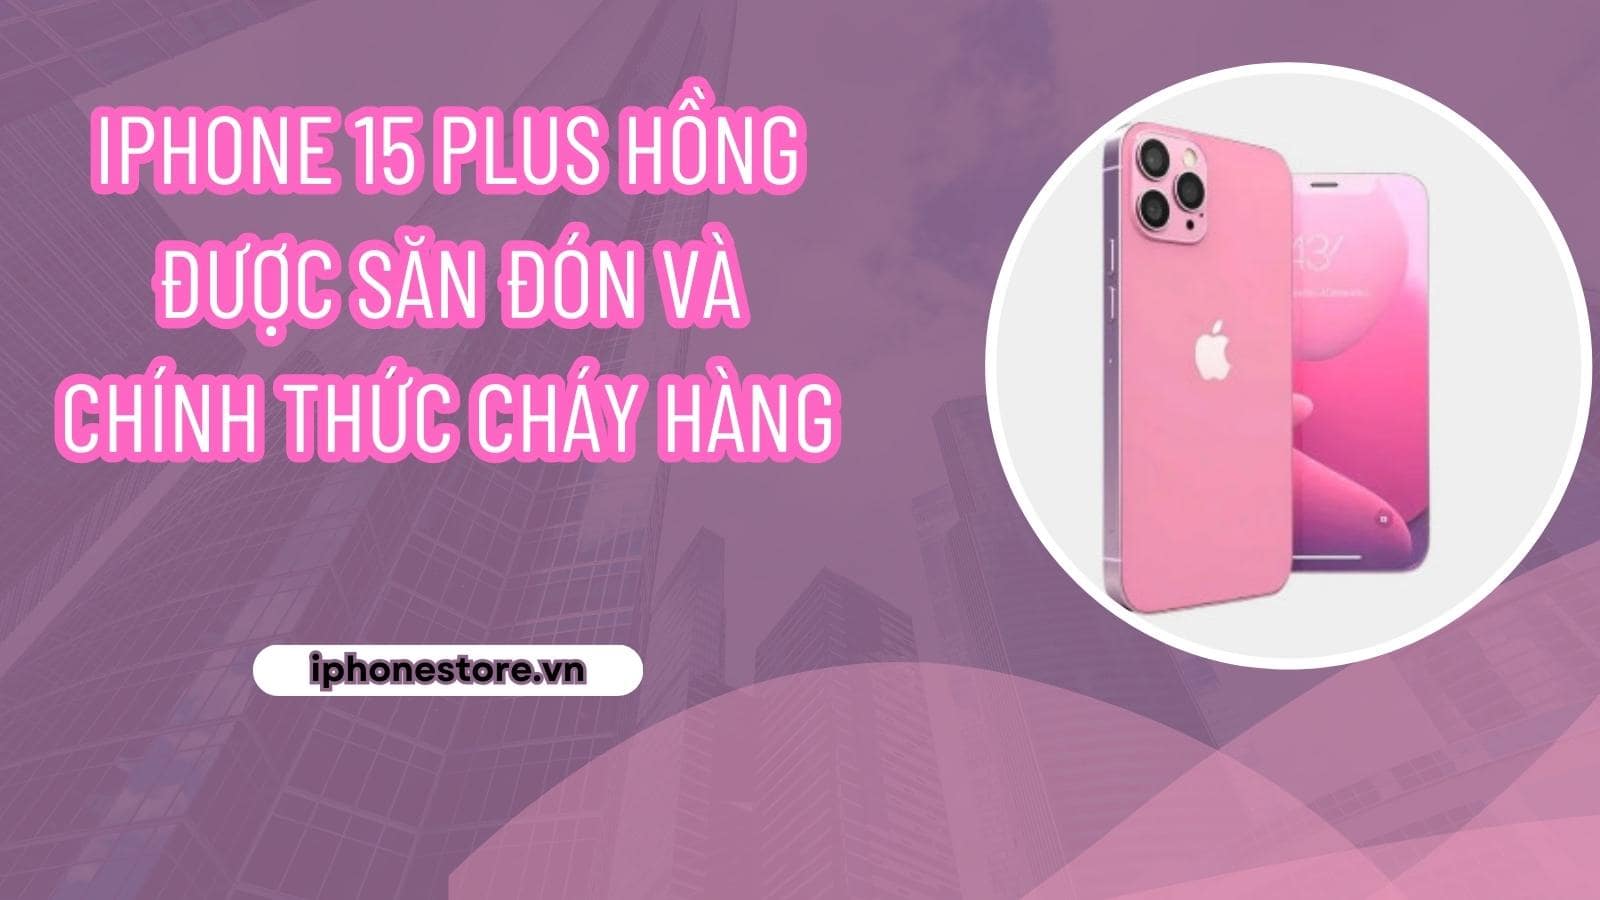 iPhone 15 Plus hồng được săn đón và chính thức cháy hàng